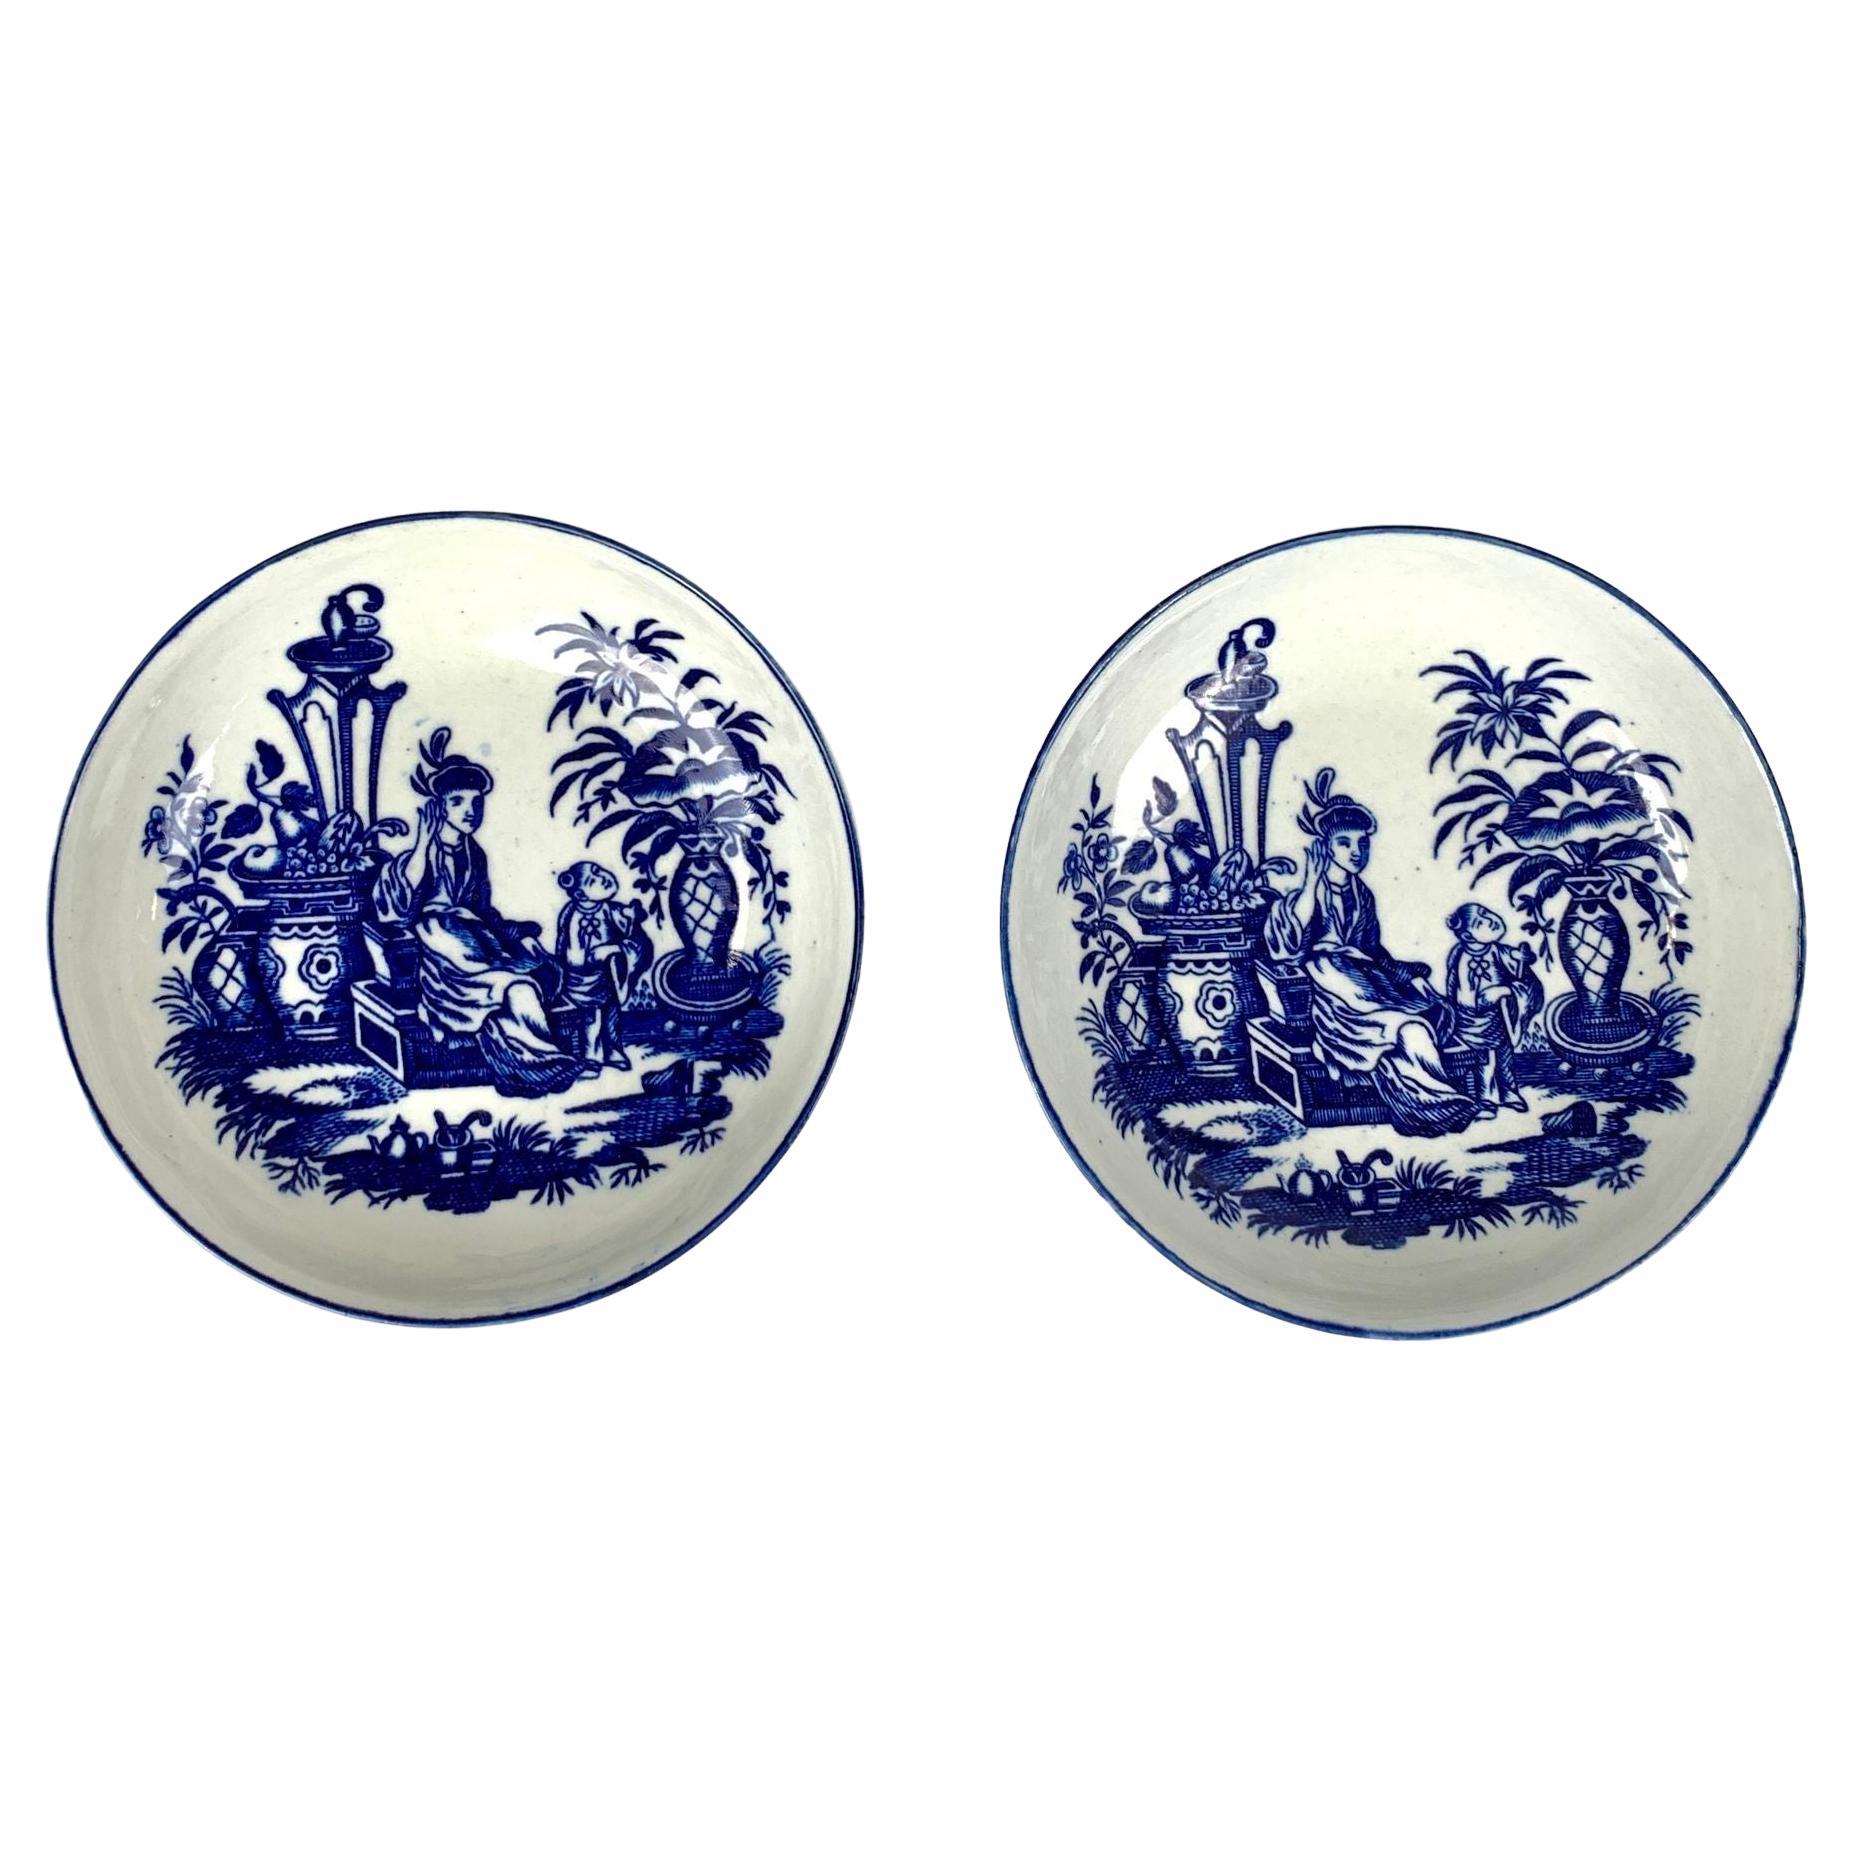 Paire de soucoupes en porcelaine de style chinoiseries bleues et blanches du 18ème siècle, Angleterre, vers 1785